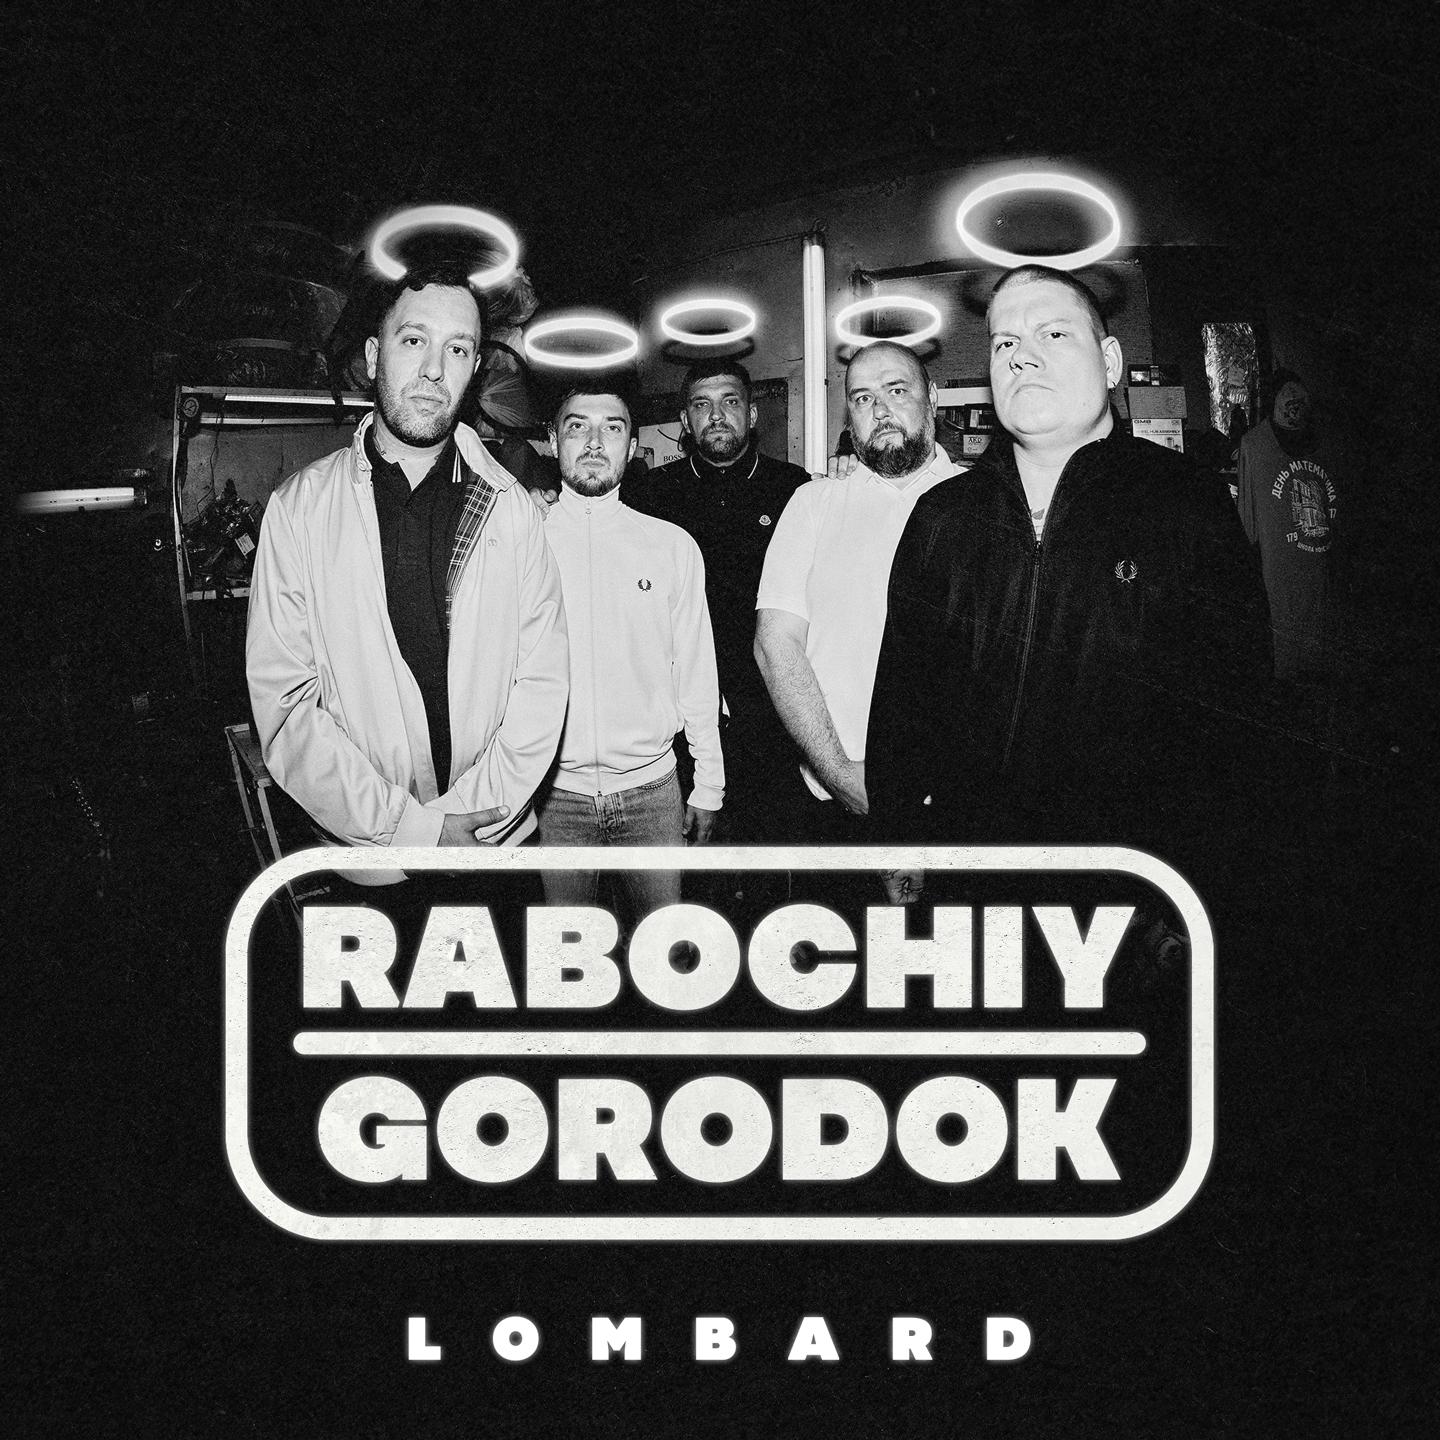 Альбом LOMBARD исполнителя RABOCHIY GORODOK